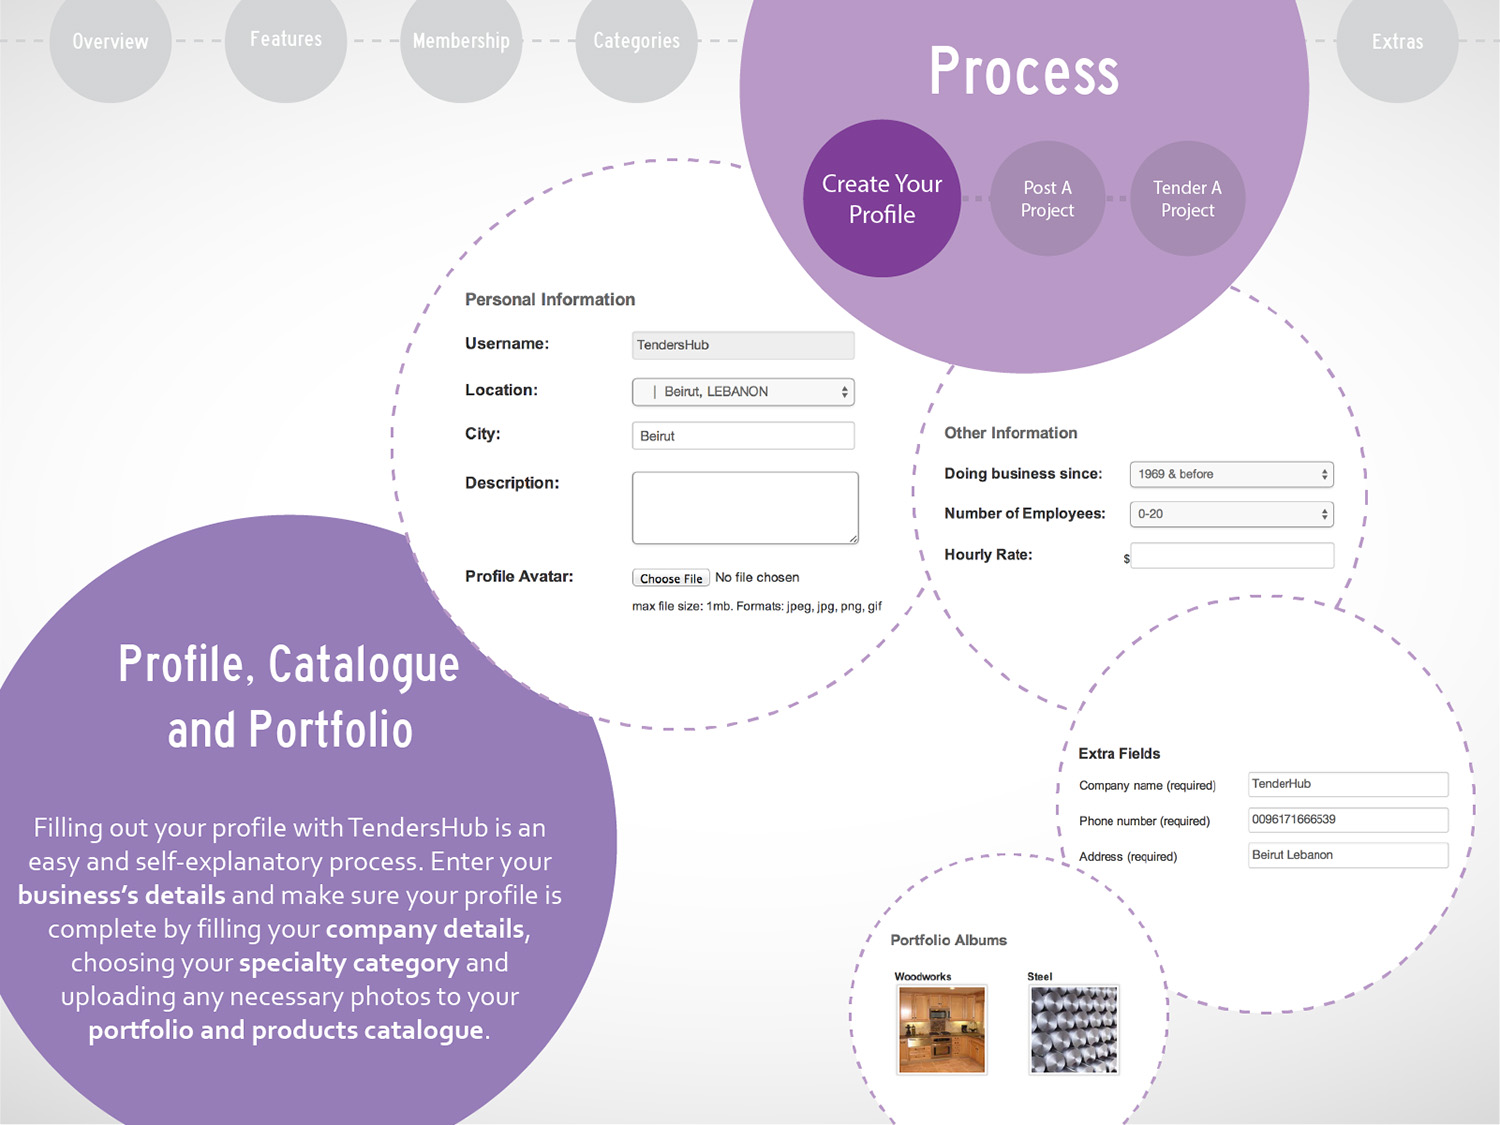 5 TendersHub brochure_Process 1.jpg